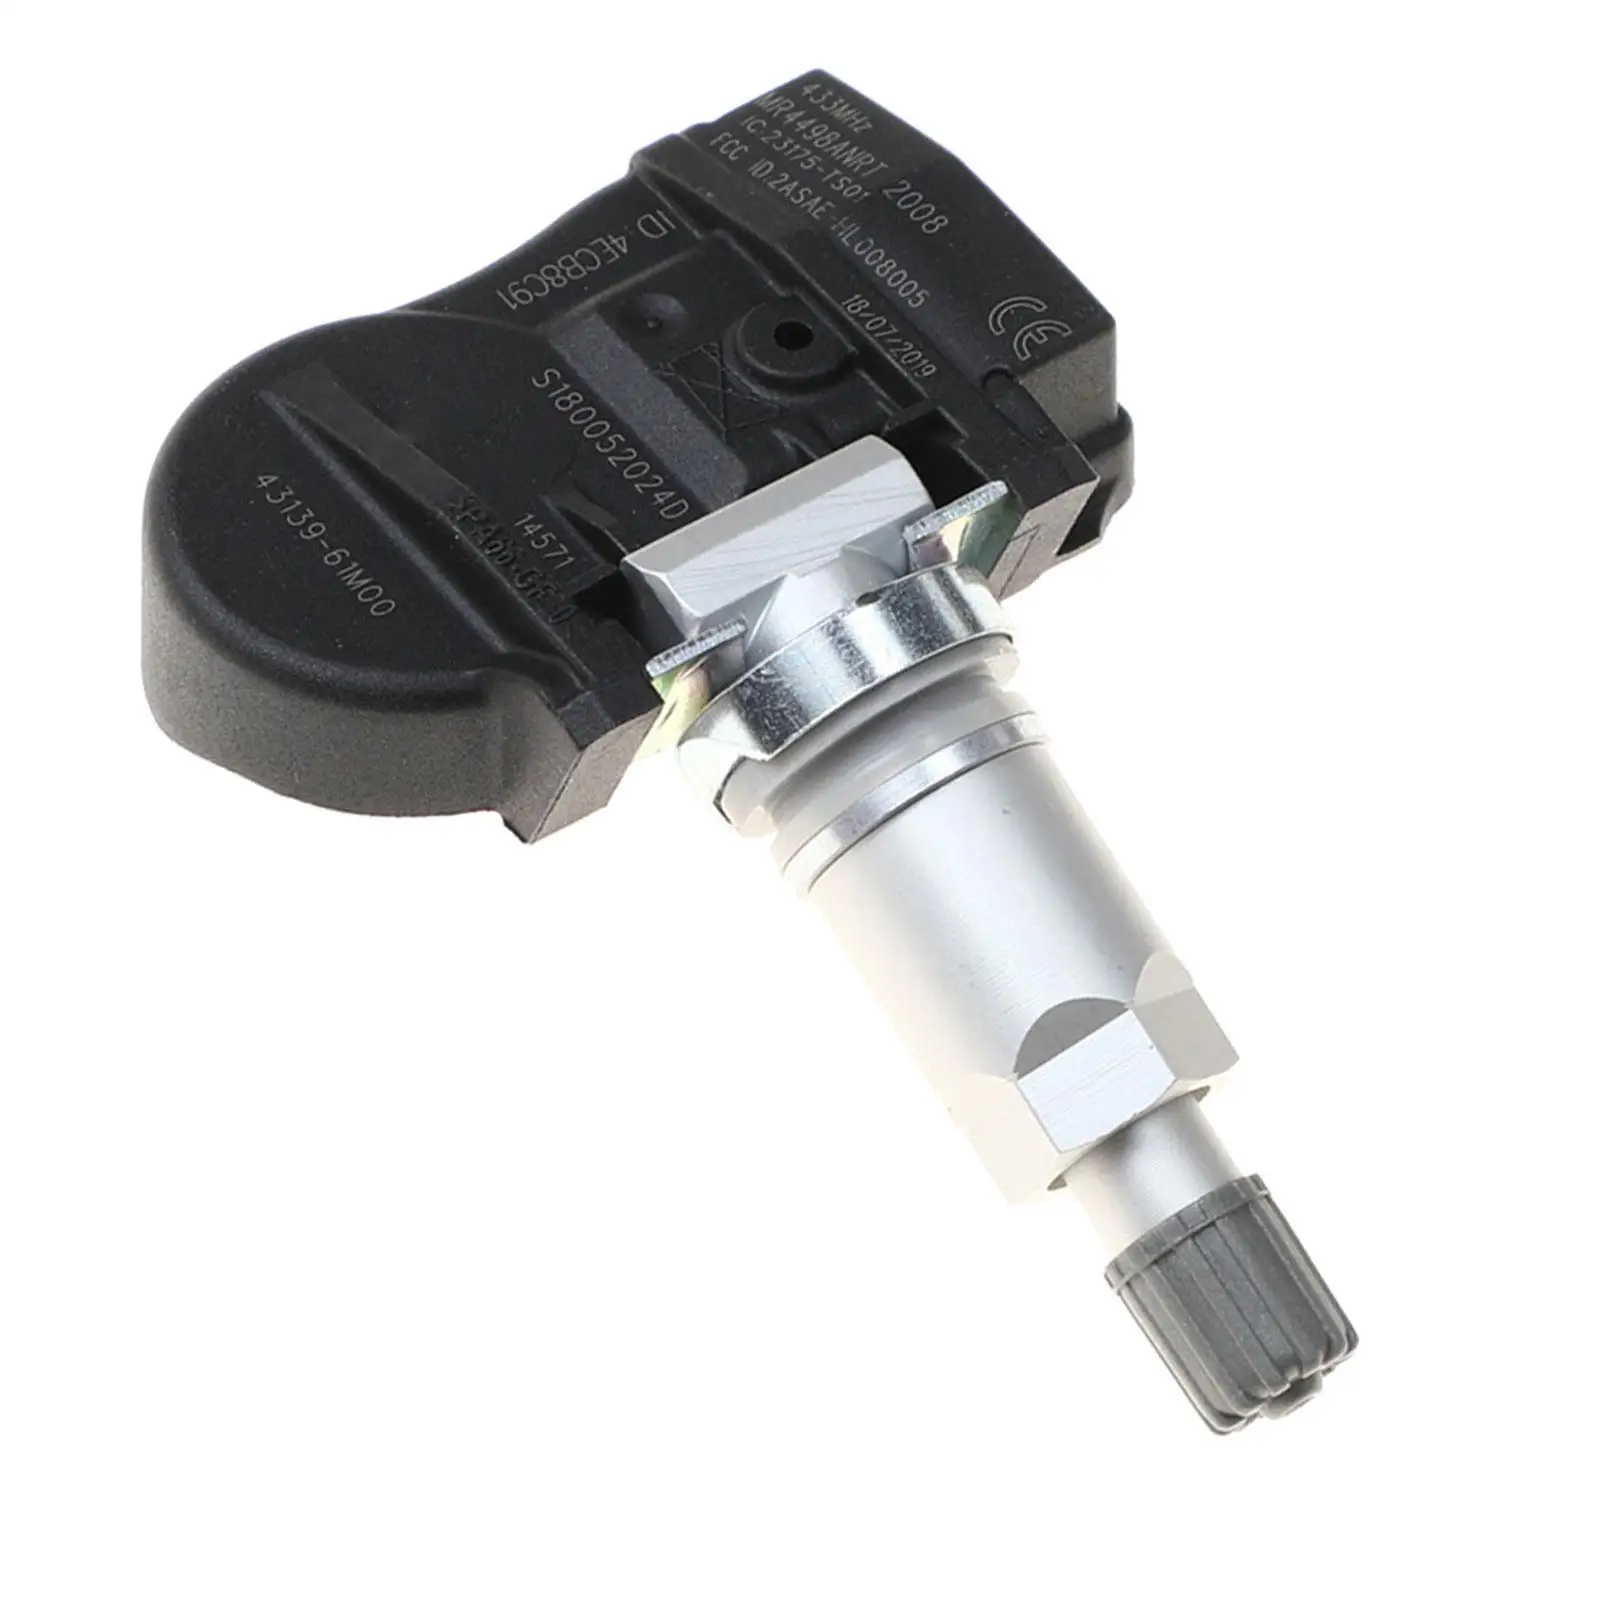 Tire Pressure Monitor Sensor Spare Parts for Suzuki Wear Resistance